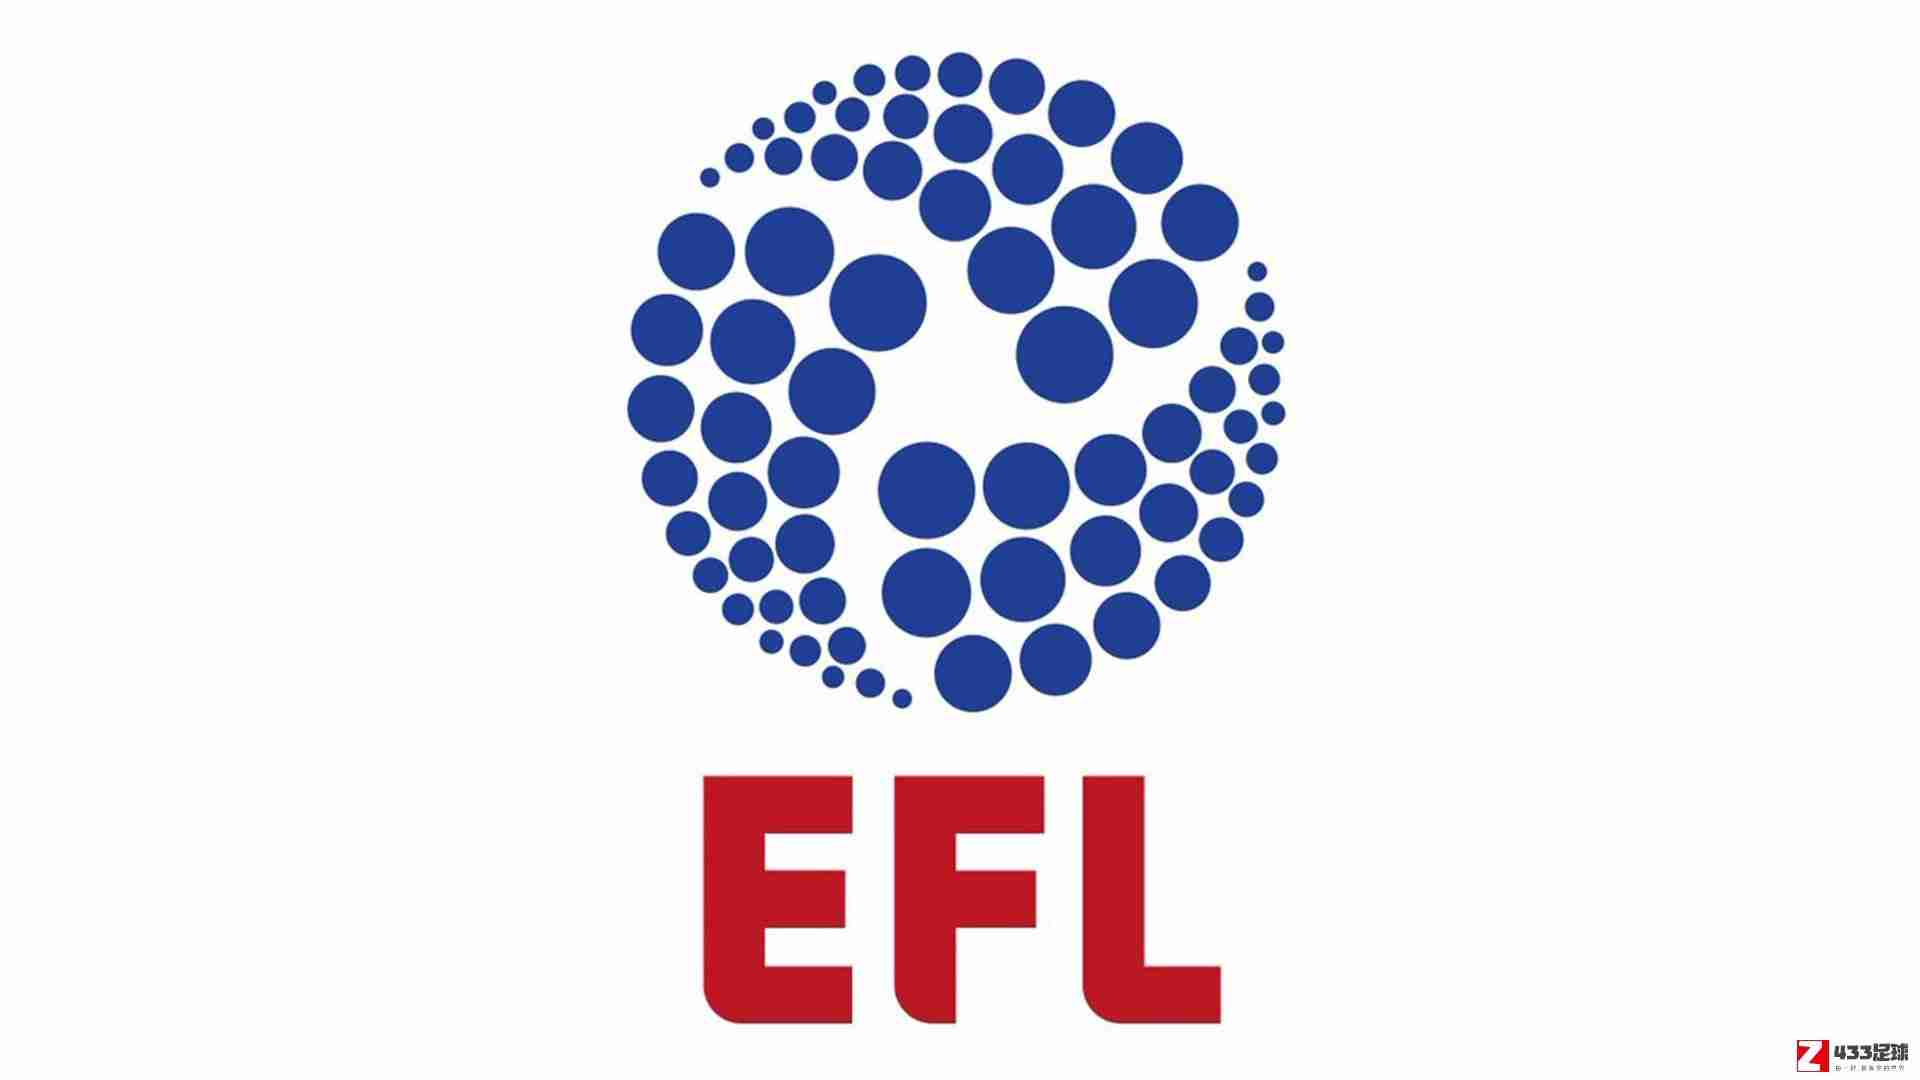 英格兰足球联盟,英超目前还没有给英格兰足球联盟EFL的俱乐部提供任何财务资金支持